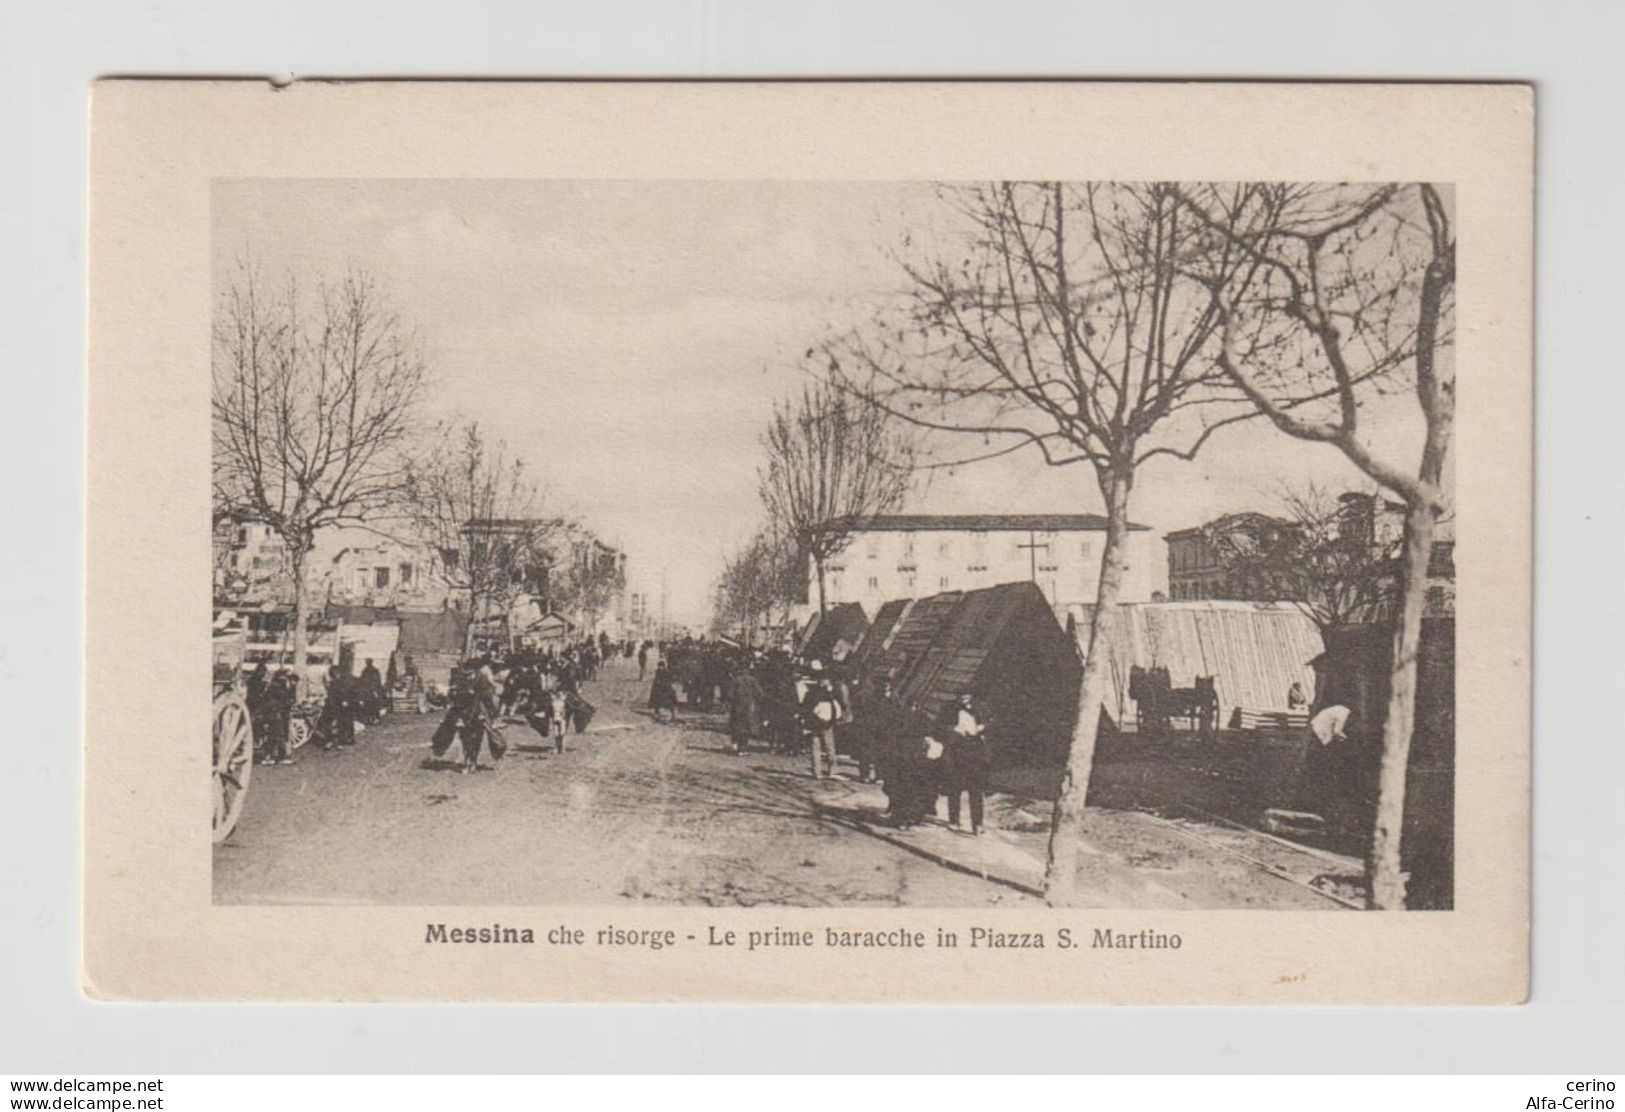 MESSINA  CHE  RISORGE:  LE  PRIME  BARACCHE  IN  PIAZZA  S. MARTINO  DOPO  IL  TERREMOTO  DEL  1908  -  FOTO  -  FP - Catastrofi